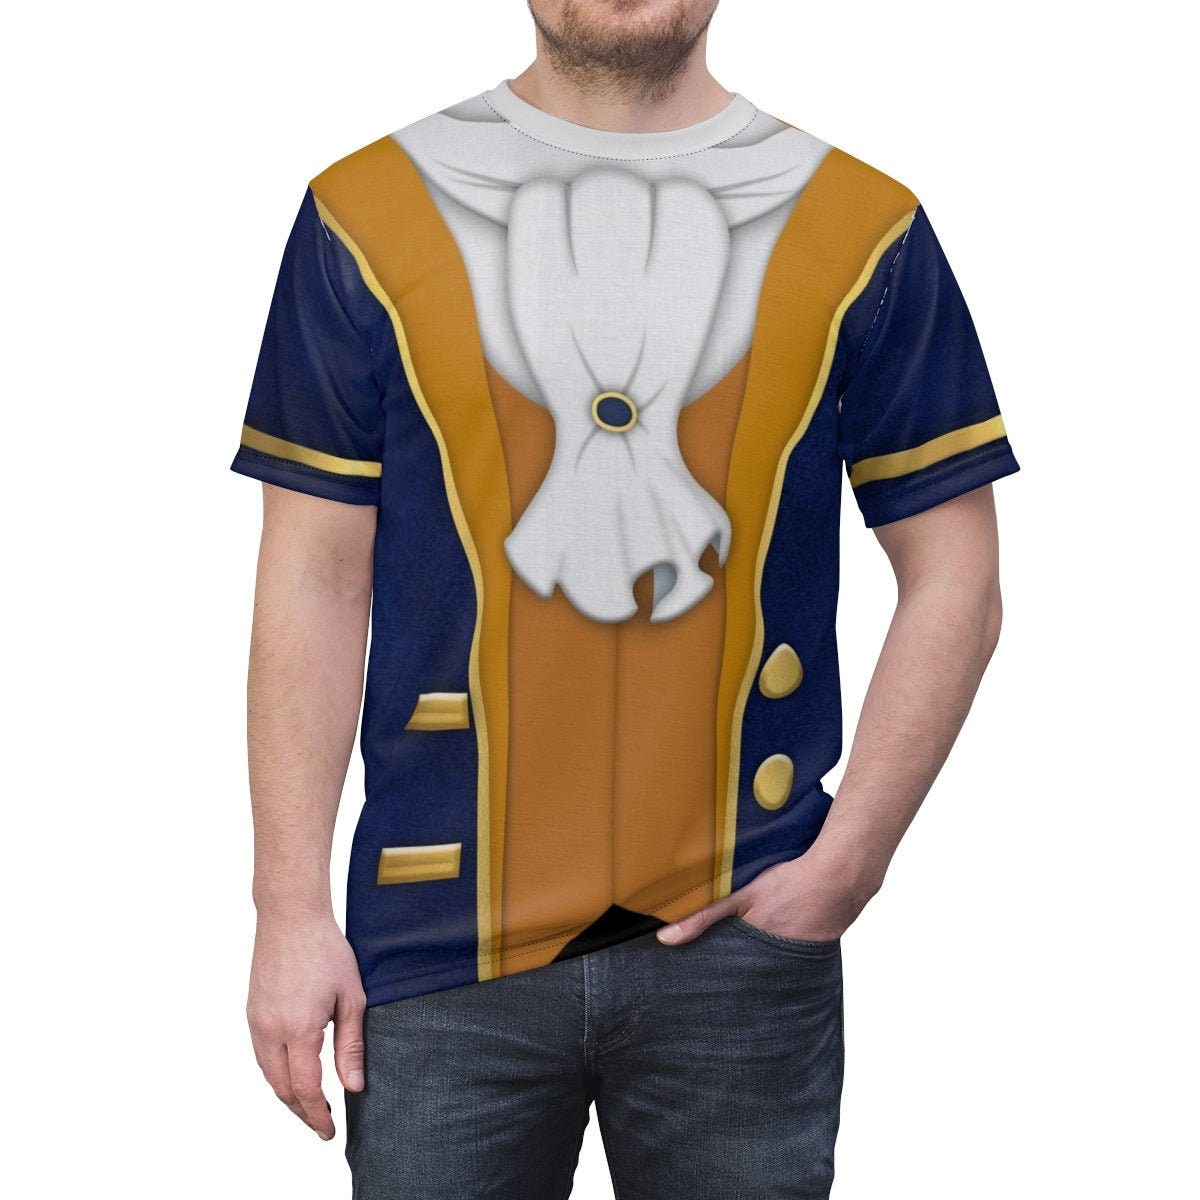 Bert Unisex Shirt Mary Poppins Costume Halloween Gift